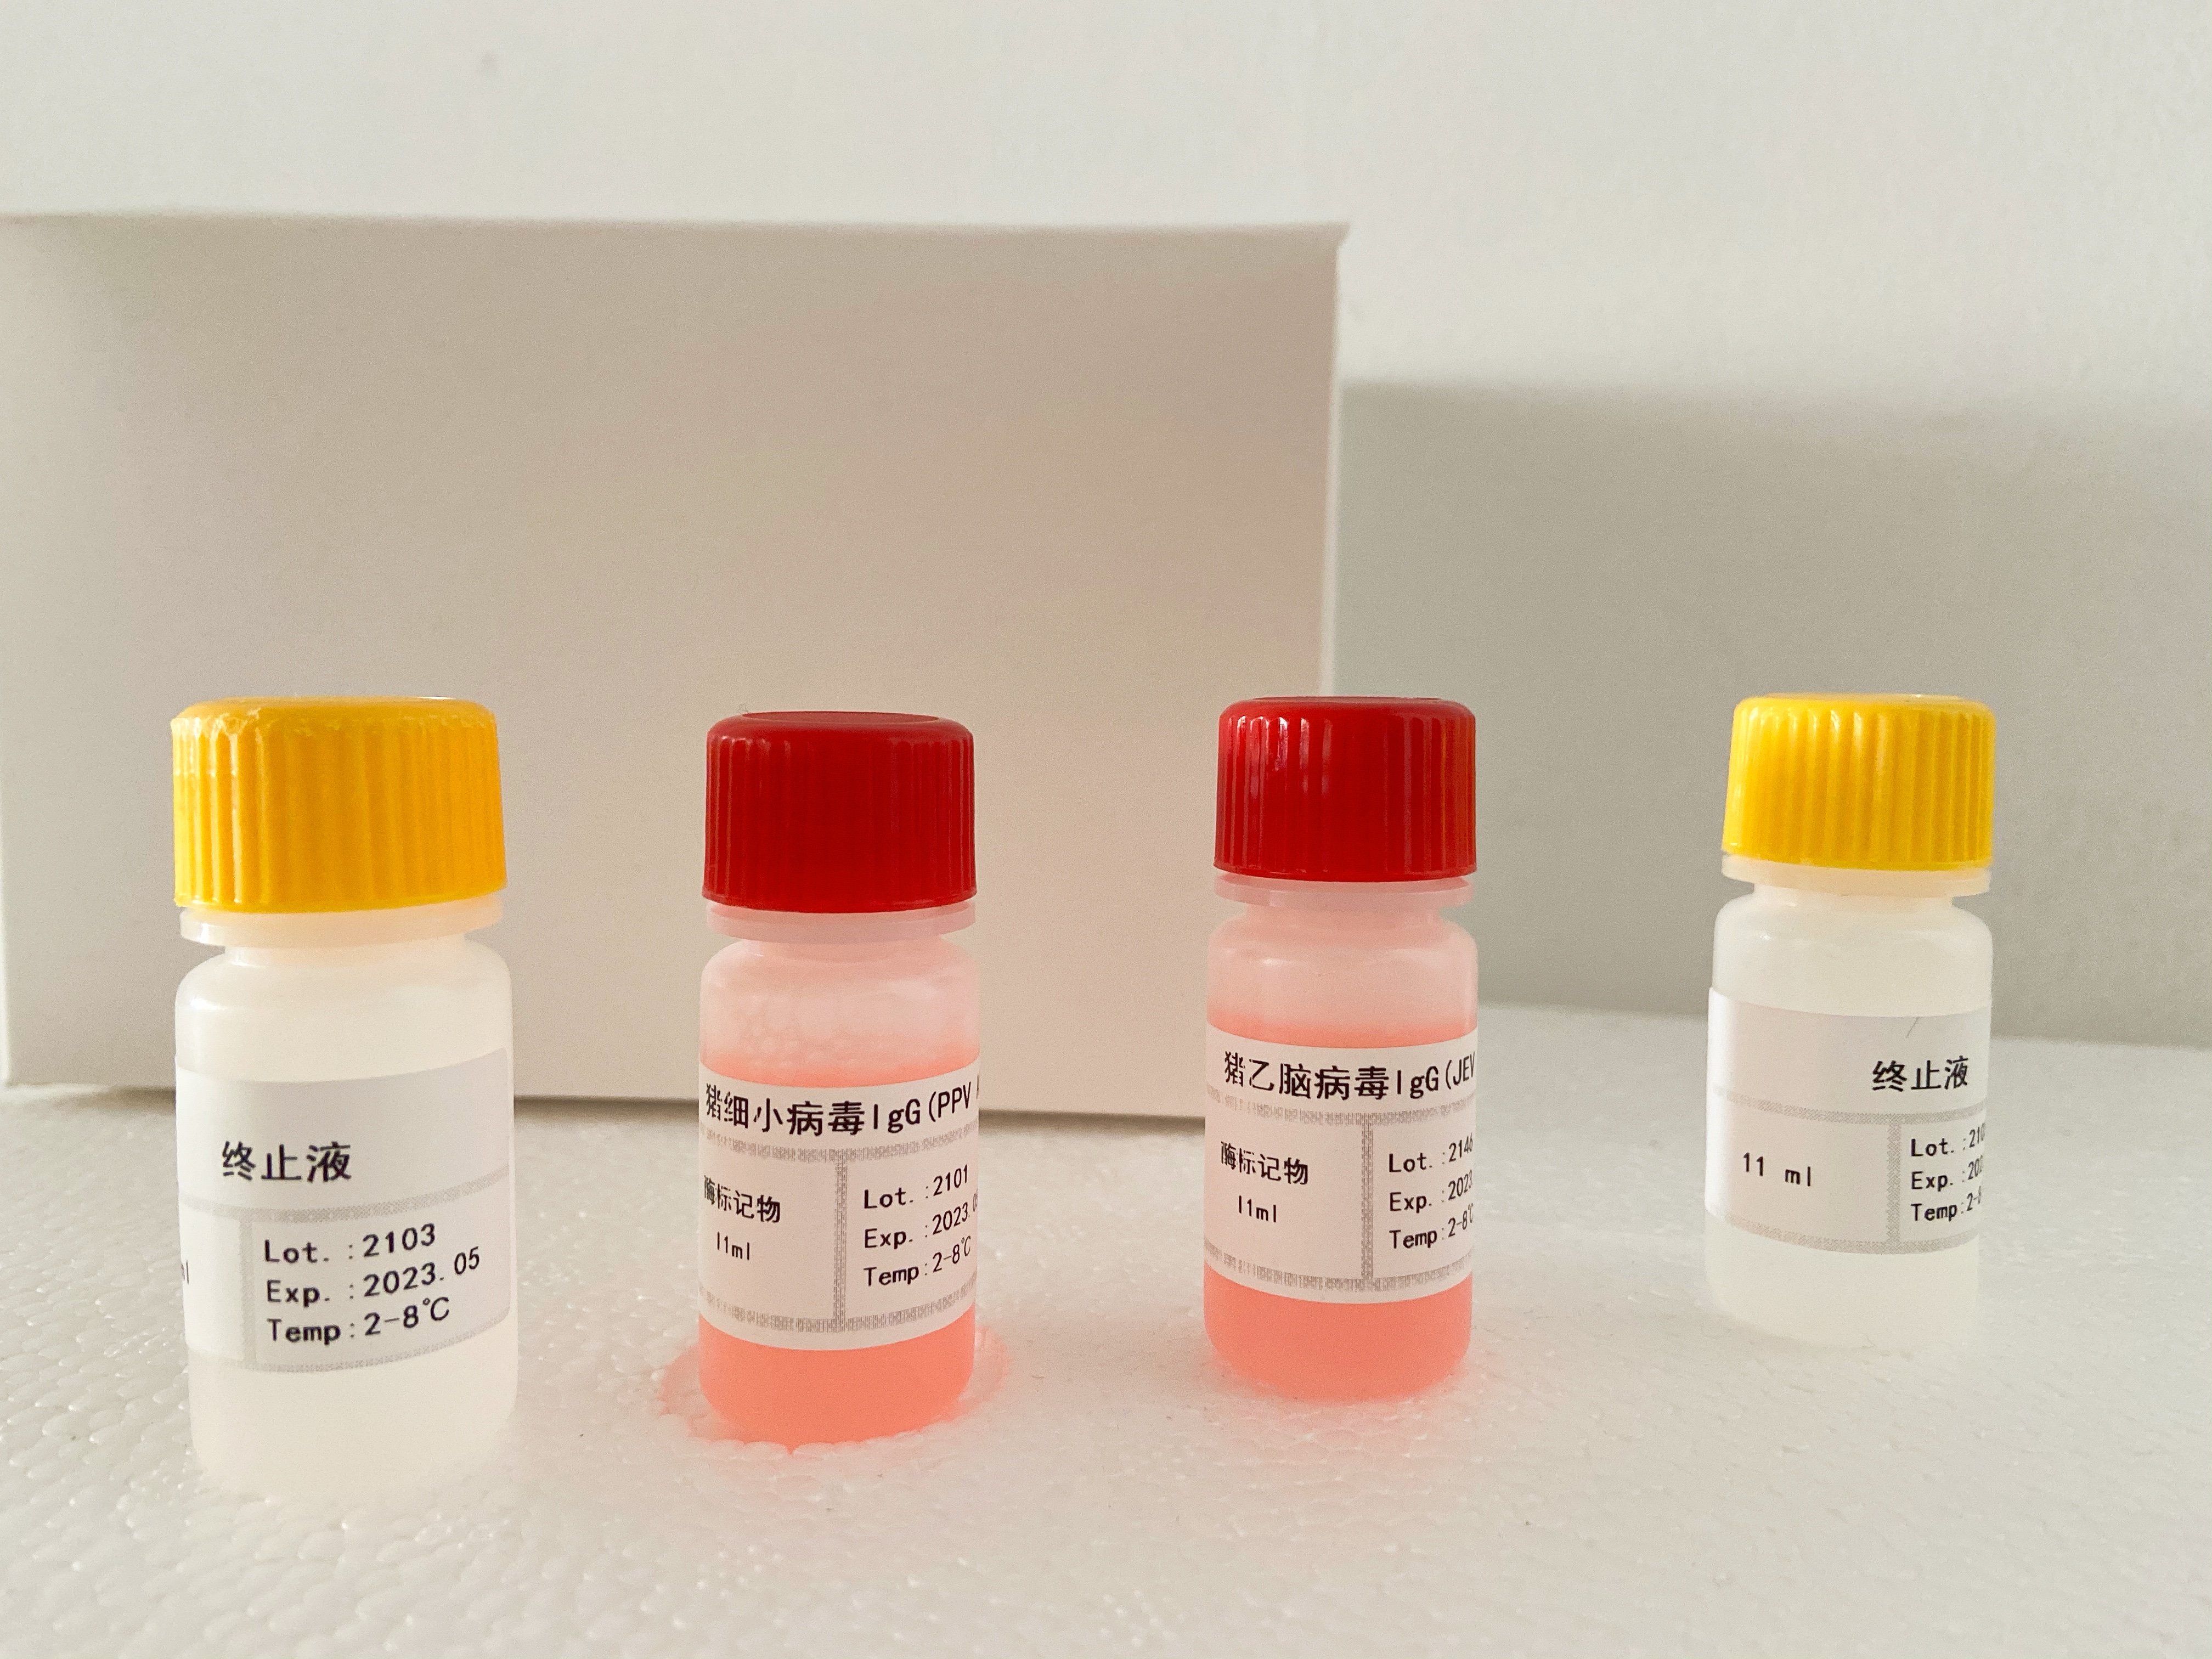 αHBDH,小鼠检测试剂盒